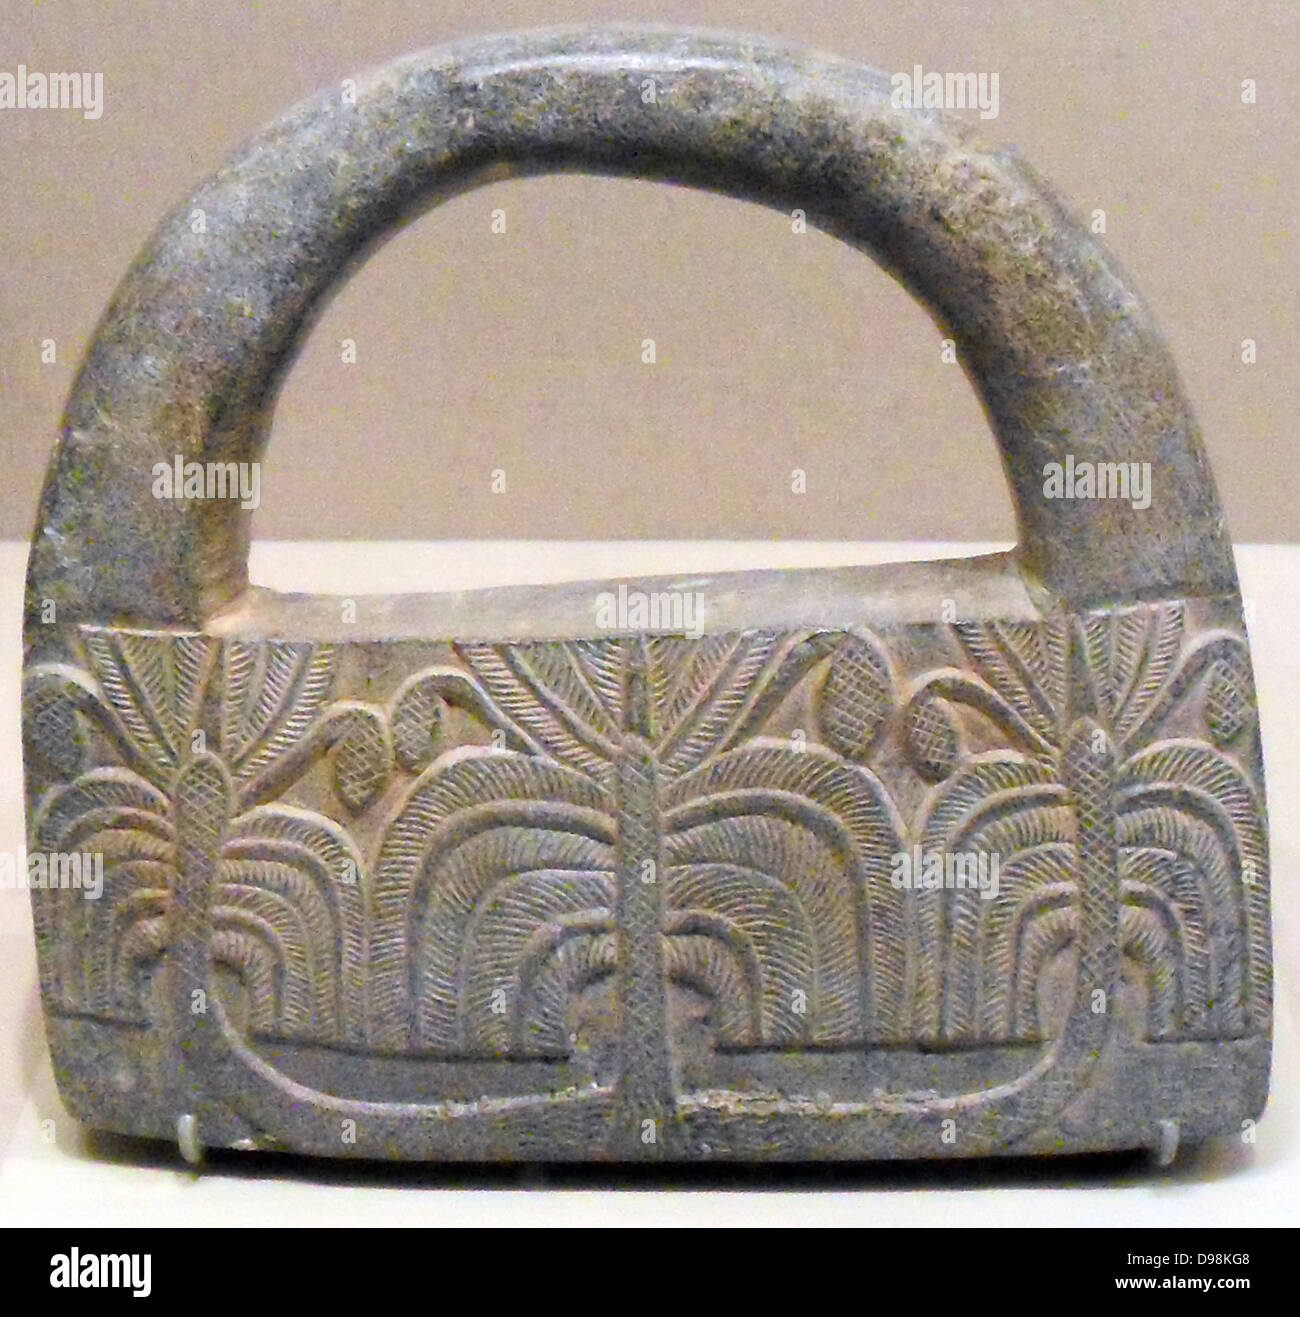 Oggetto costituito da scisti clorito. Eventualmente utilizzato come fermacarte. Iraniano, persiano III millennio A.C. Foto Stock